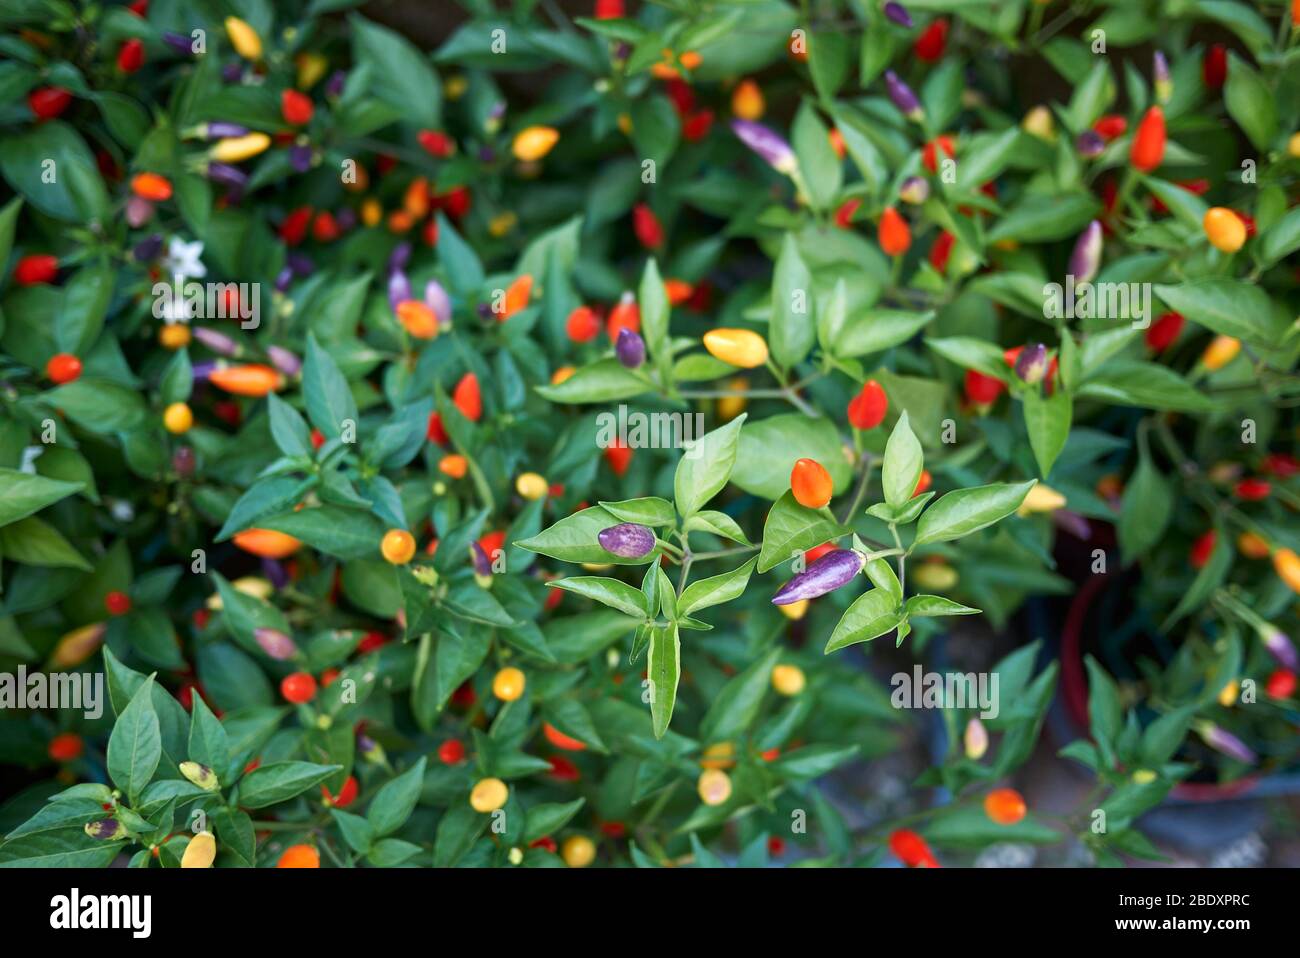 Capsicum annuum, ornamental peppers Stock Photo